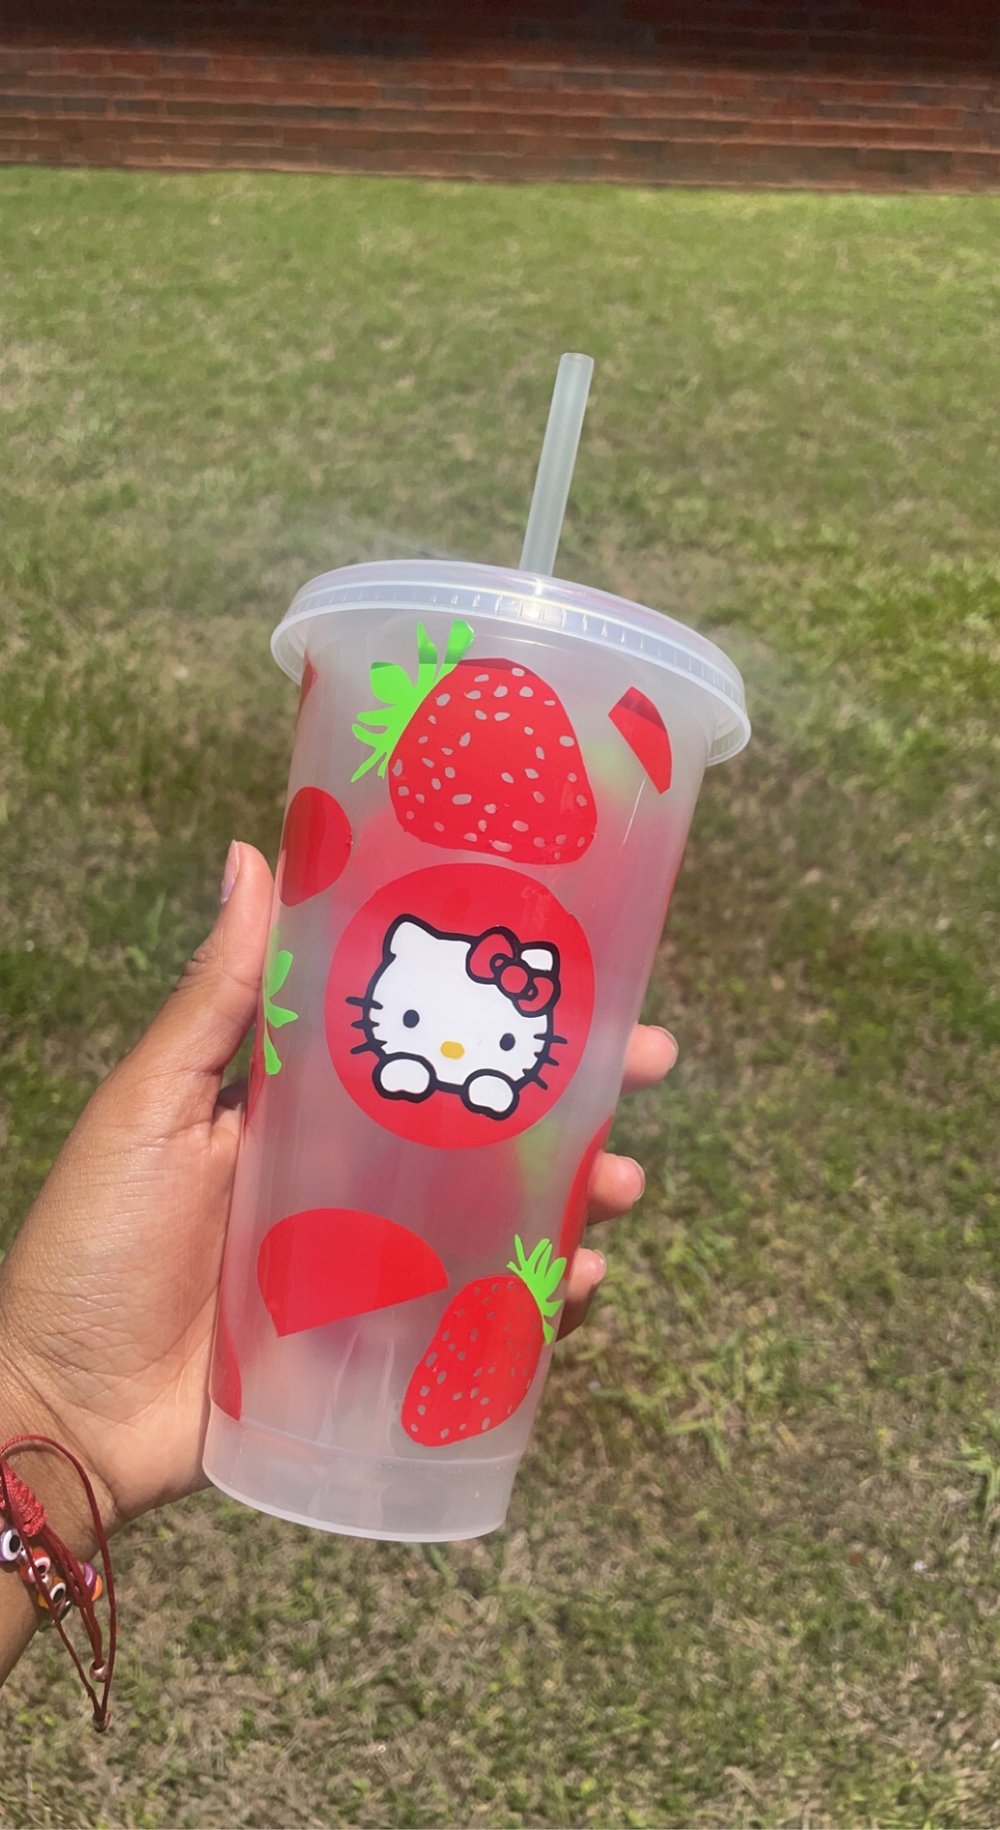 Hello Kitty Strawberry 20oz Plastic Tumbler